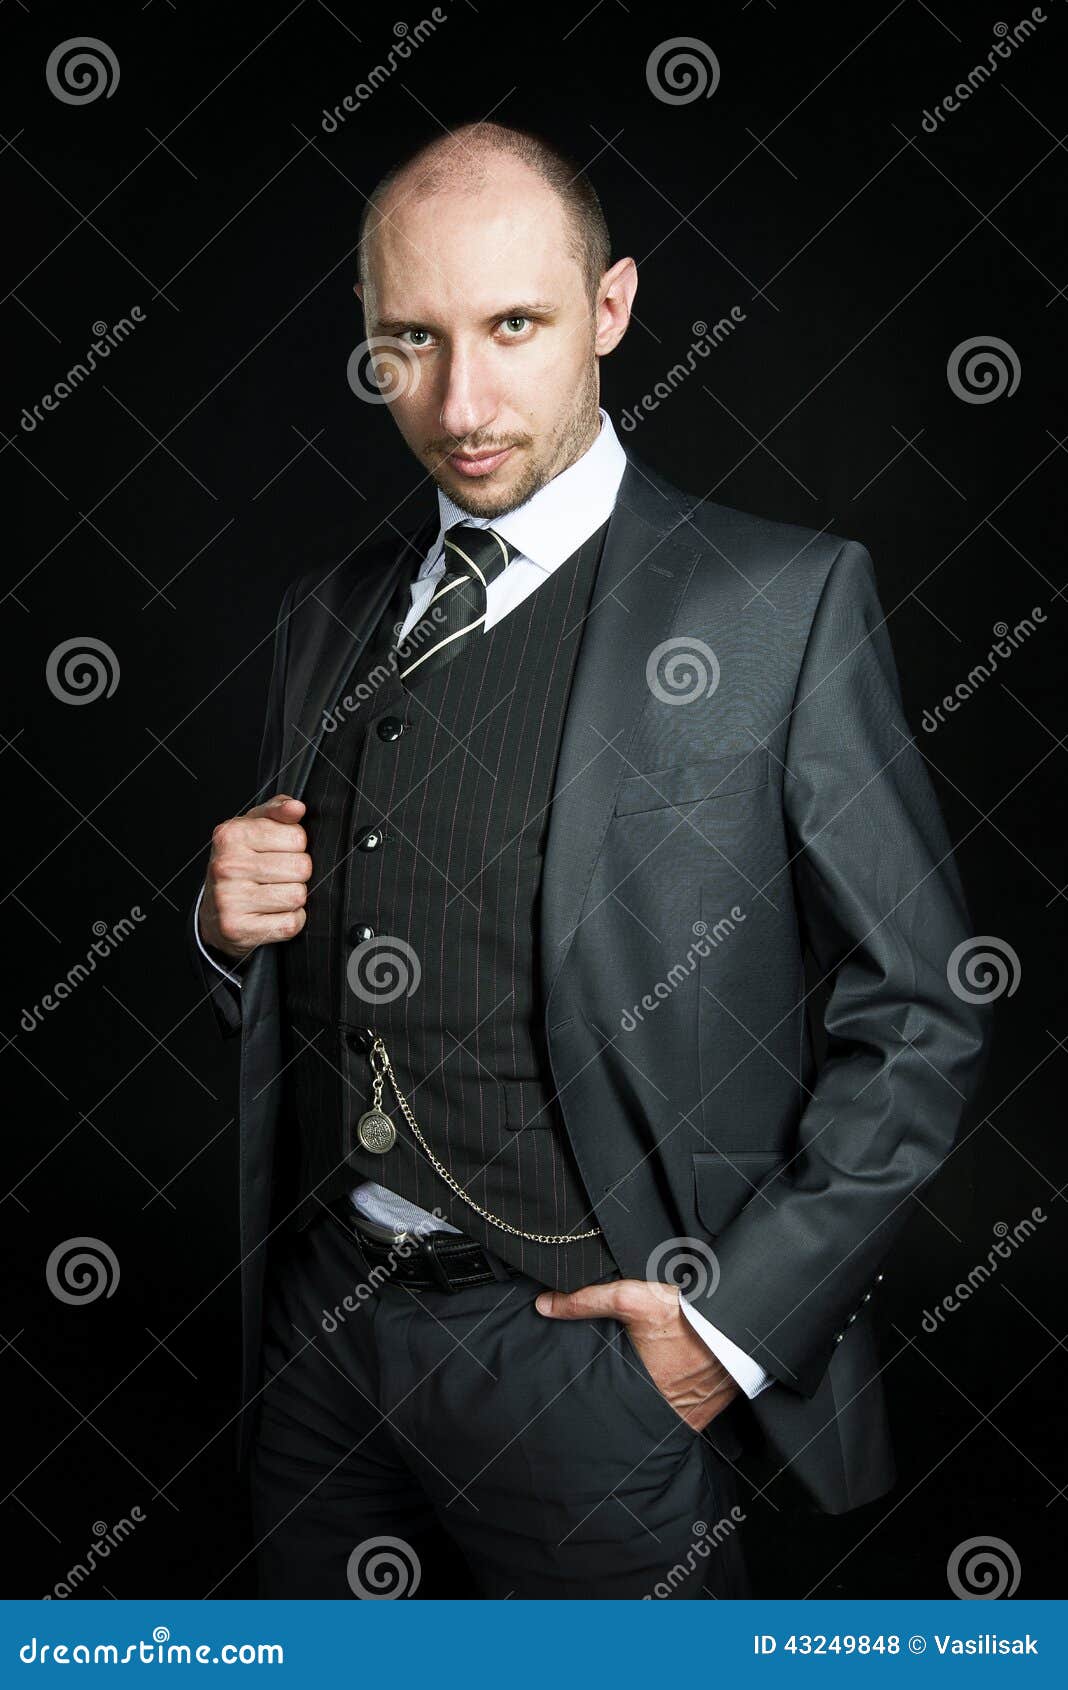 Serious bald businessman stock photo. Image of serious - 43249848